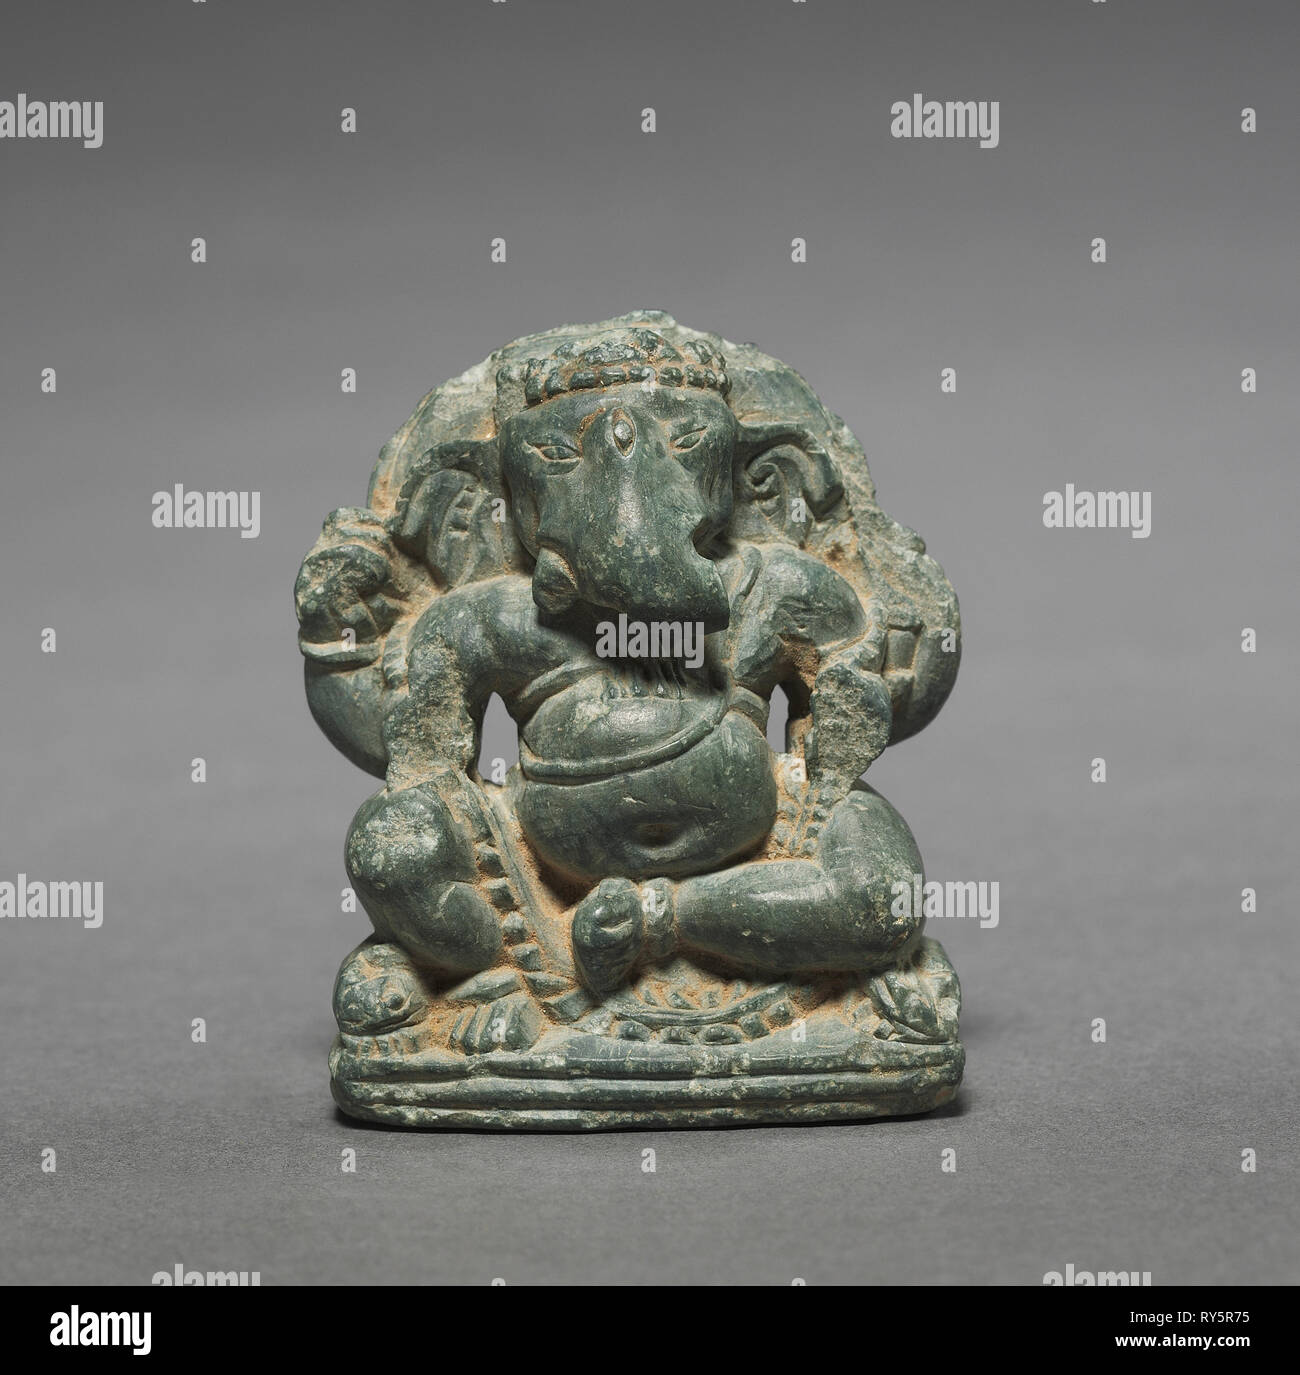 Seduto in miniatura Ganesa, c. 700s. India nord-occidentale o il Kashmir, c. Viii secolo. Lo scisto verdastro; complessivo: 5,4 cm (2 1/8 in Foto Stock